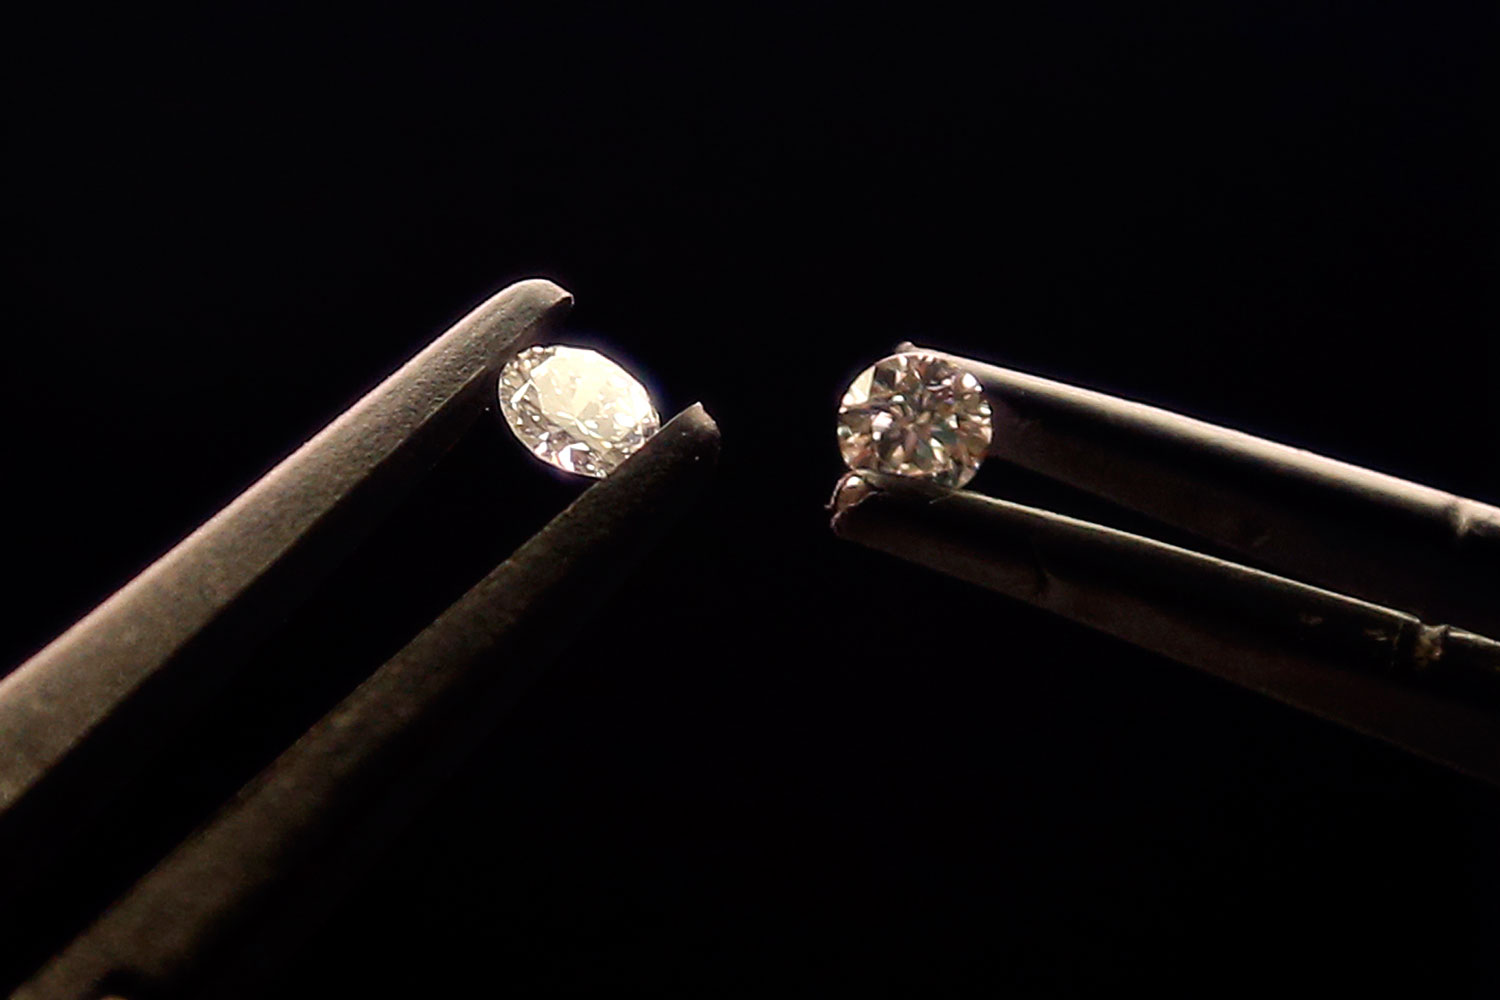 Crece el negocio de los diamantes sintéticos produciendose unas 600 toneladas al año